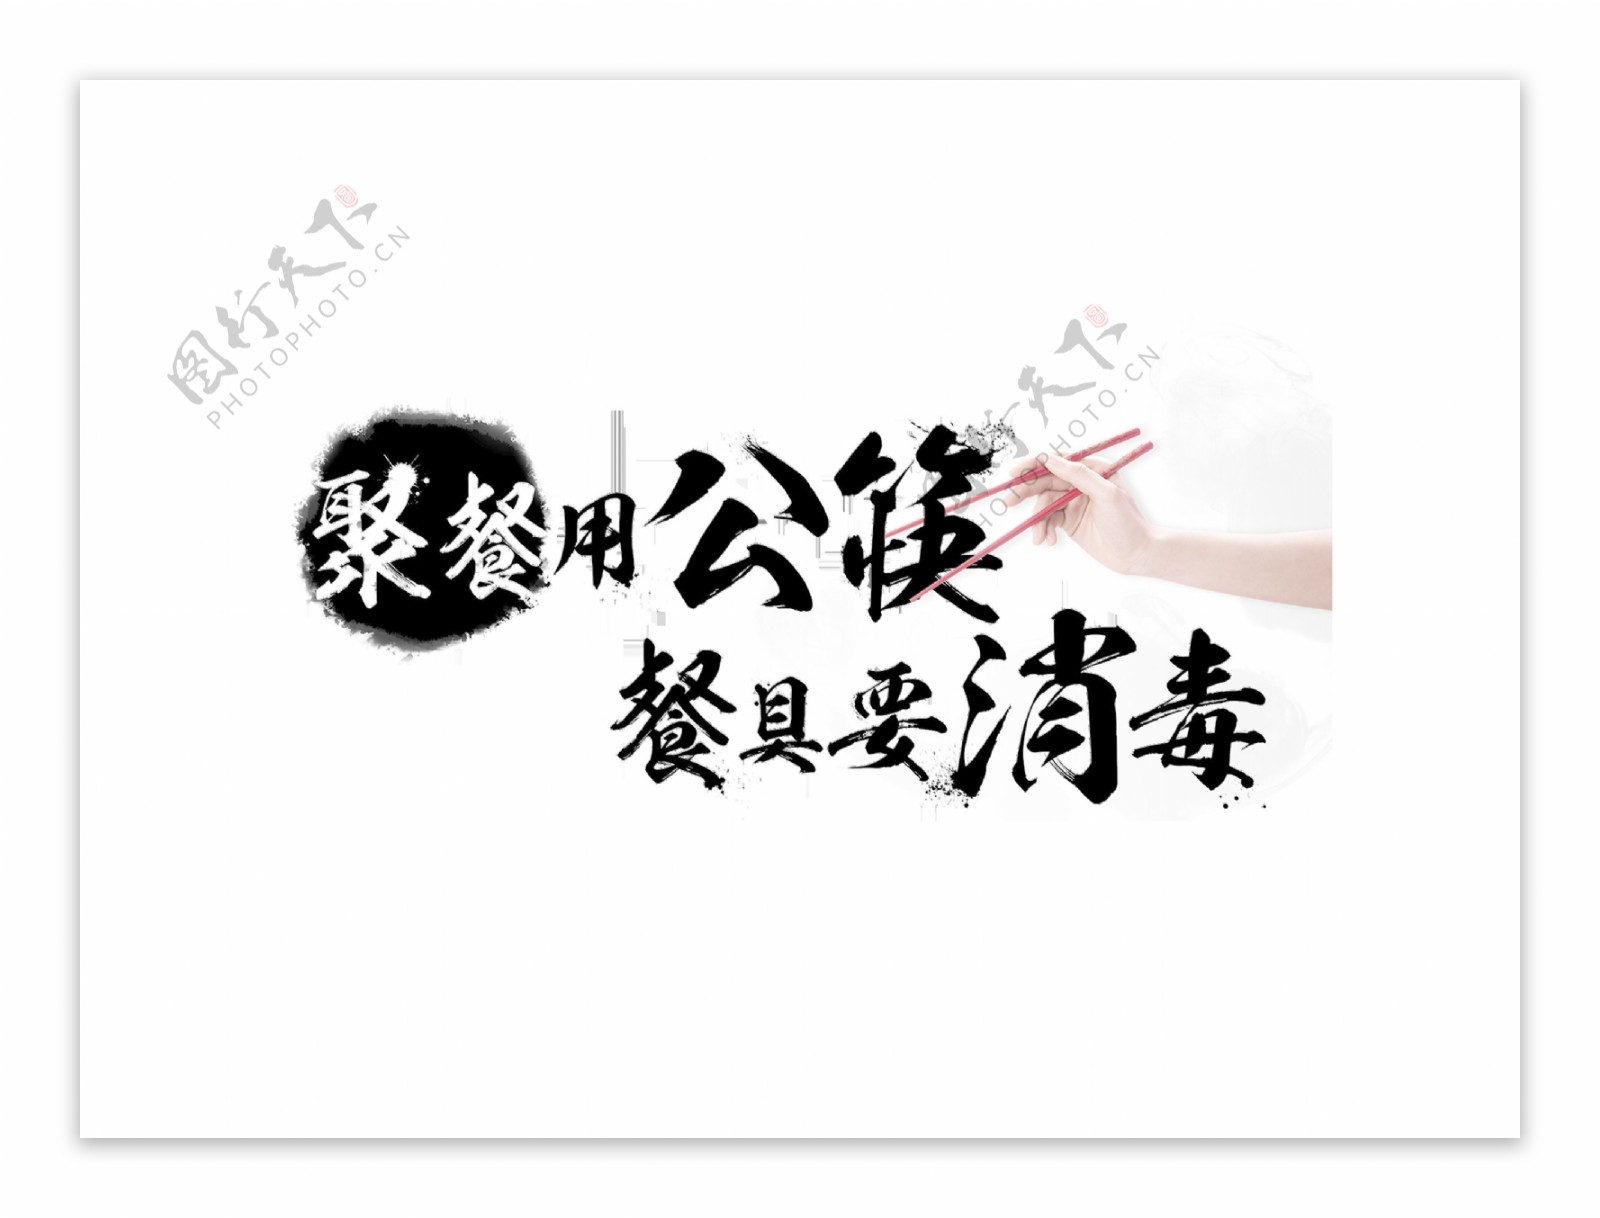 聚餐用公筷餐具要消毒艺术字字体设计